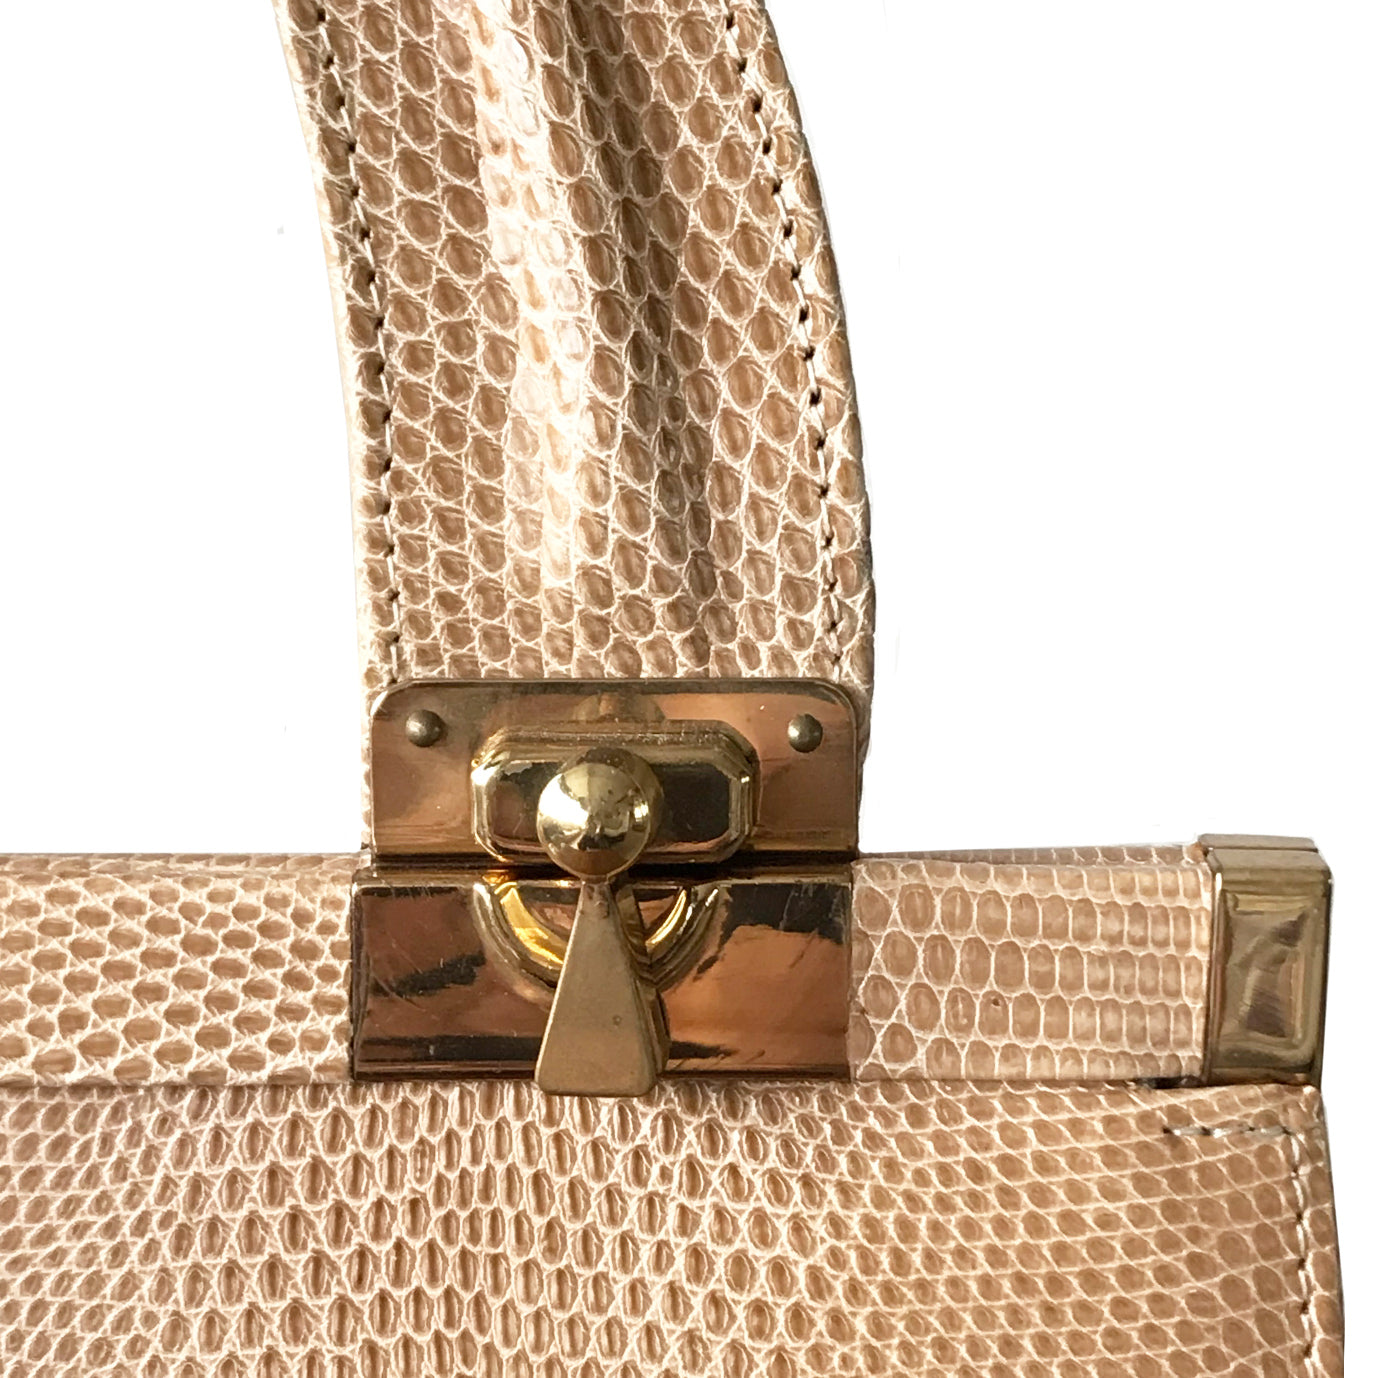 1970s Vintage Brown Jane Shilton Leather Handbag with Tags